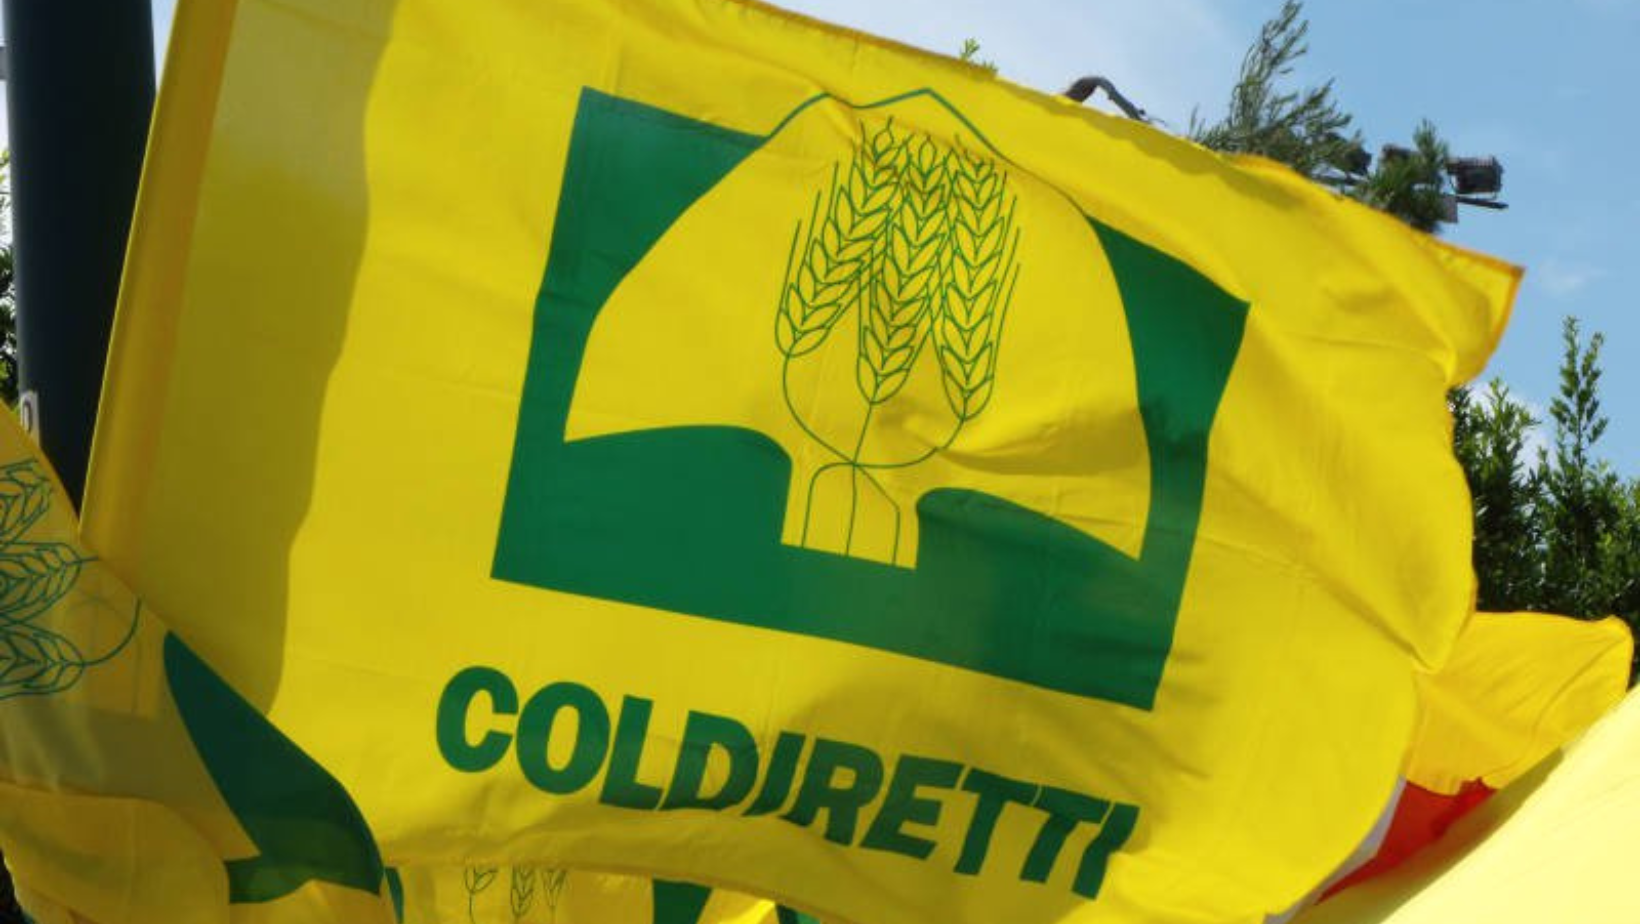 Coldiretti, il Piemonte sul podio in termini di volumi d’affari con 301 milioni di vendite